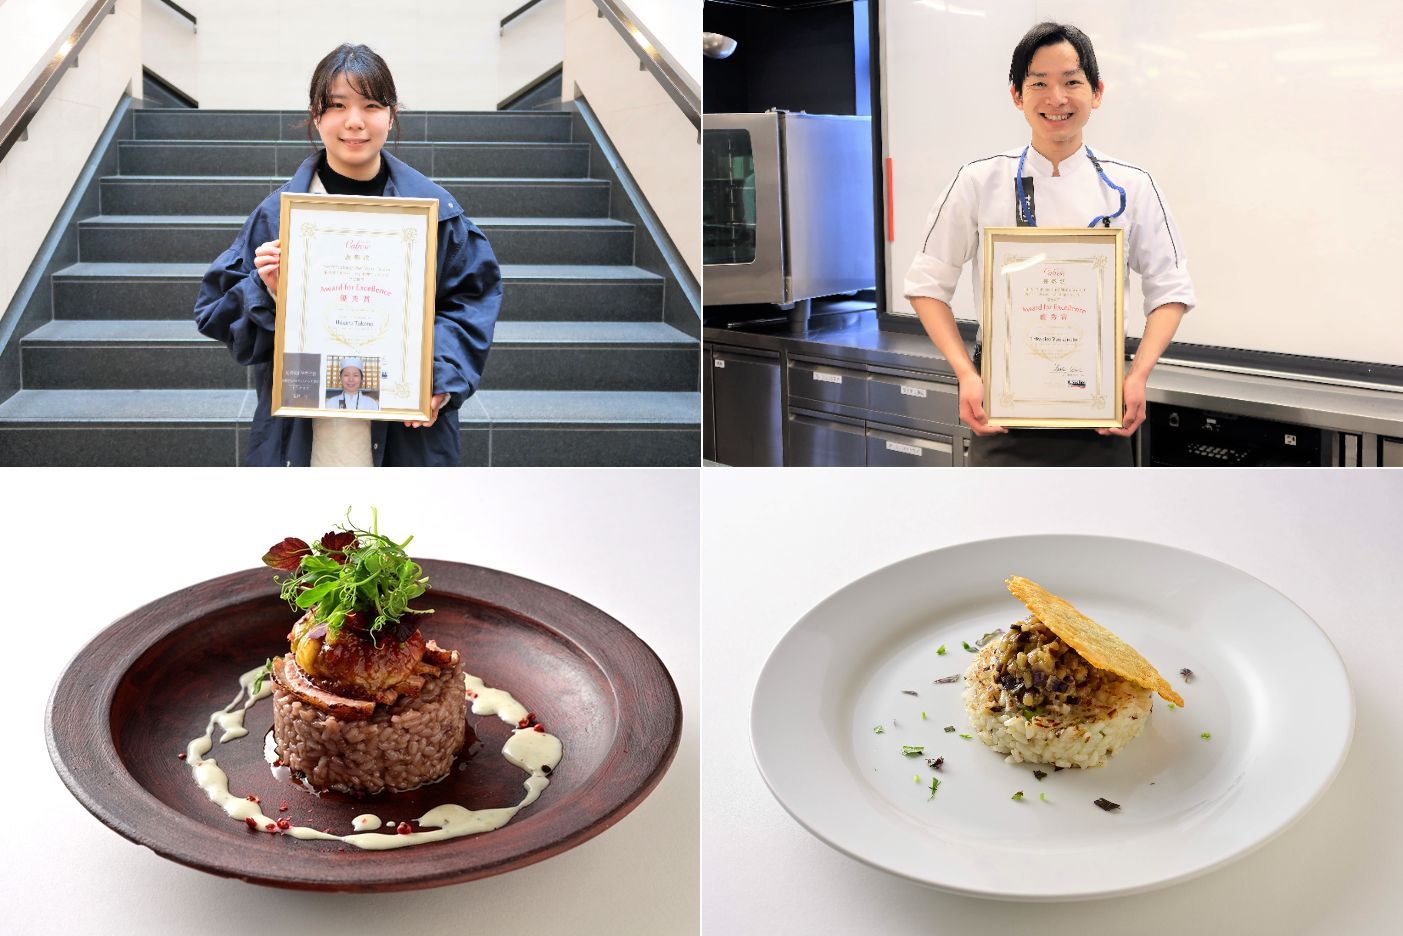 第9回「カルローズ料理コンテスト」2021【学生部門】辻調グループ学生2名が優秀賞受賞